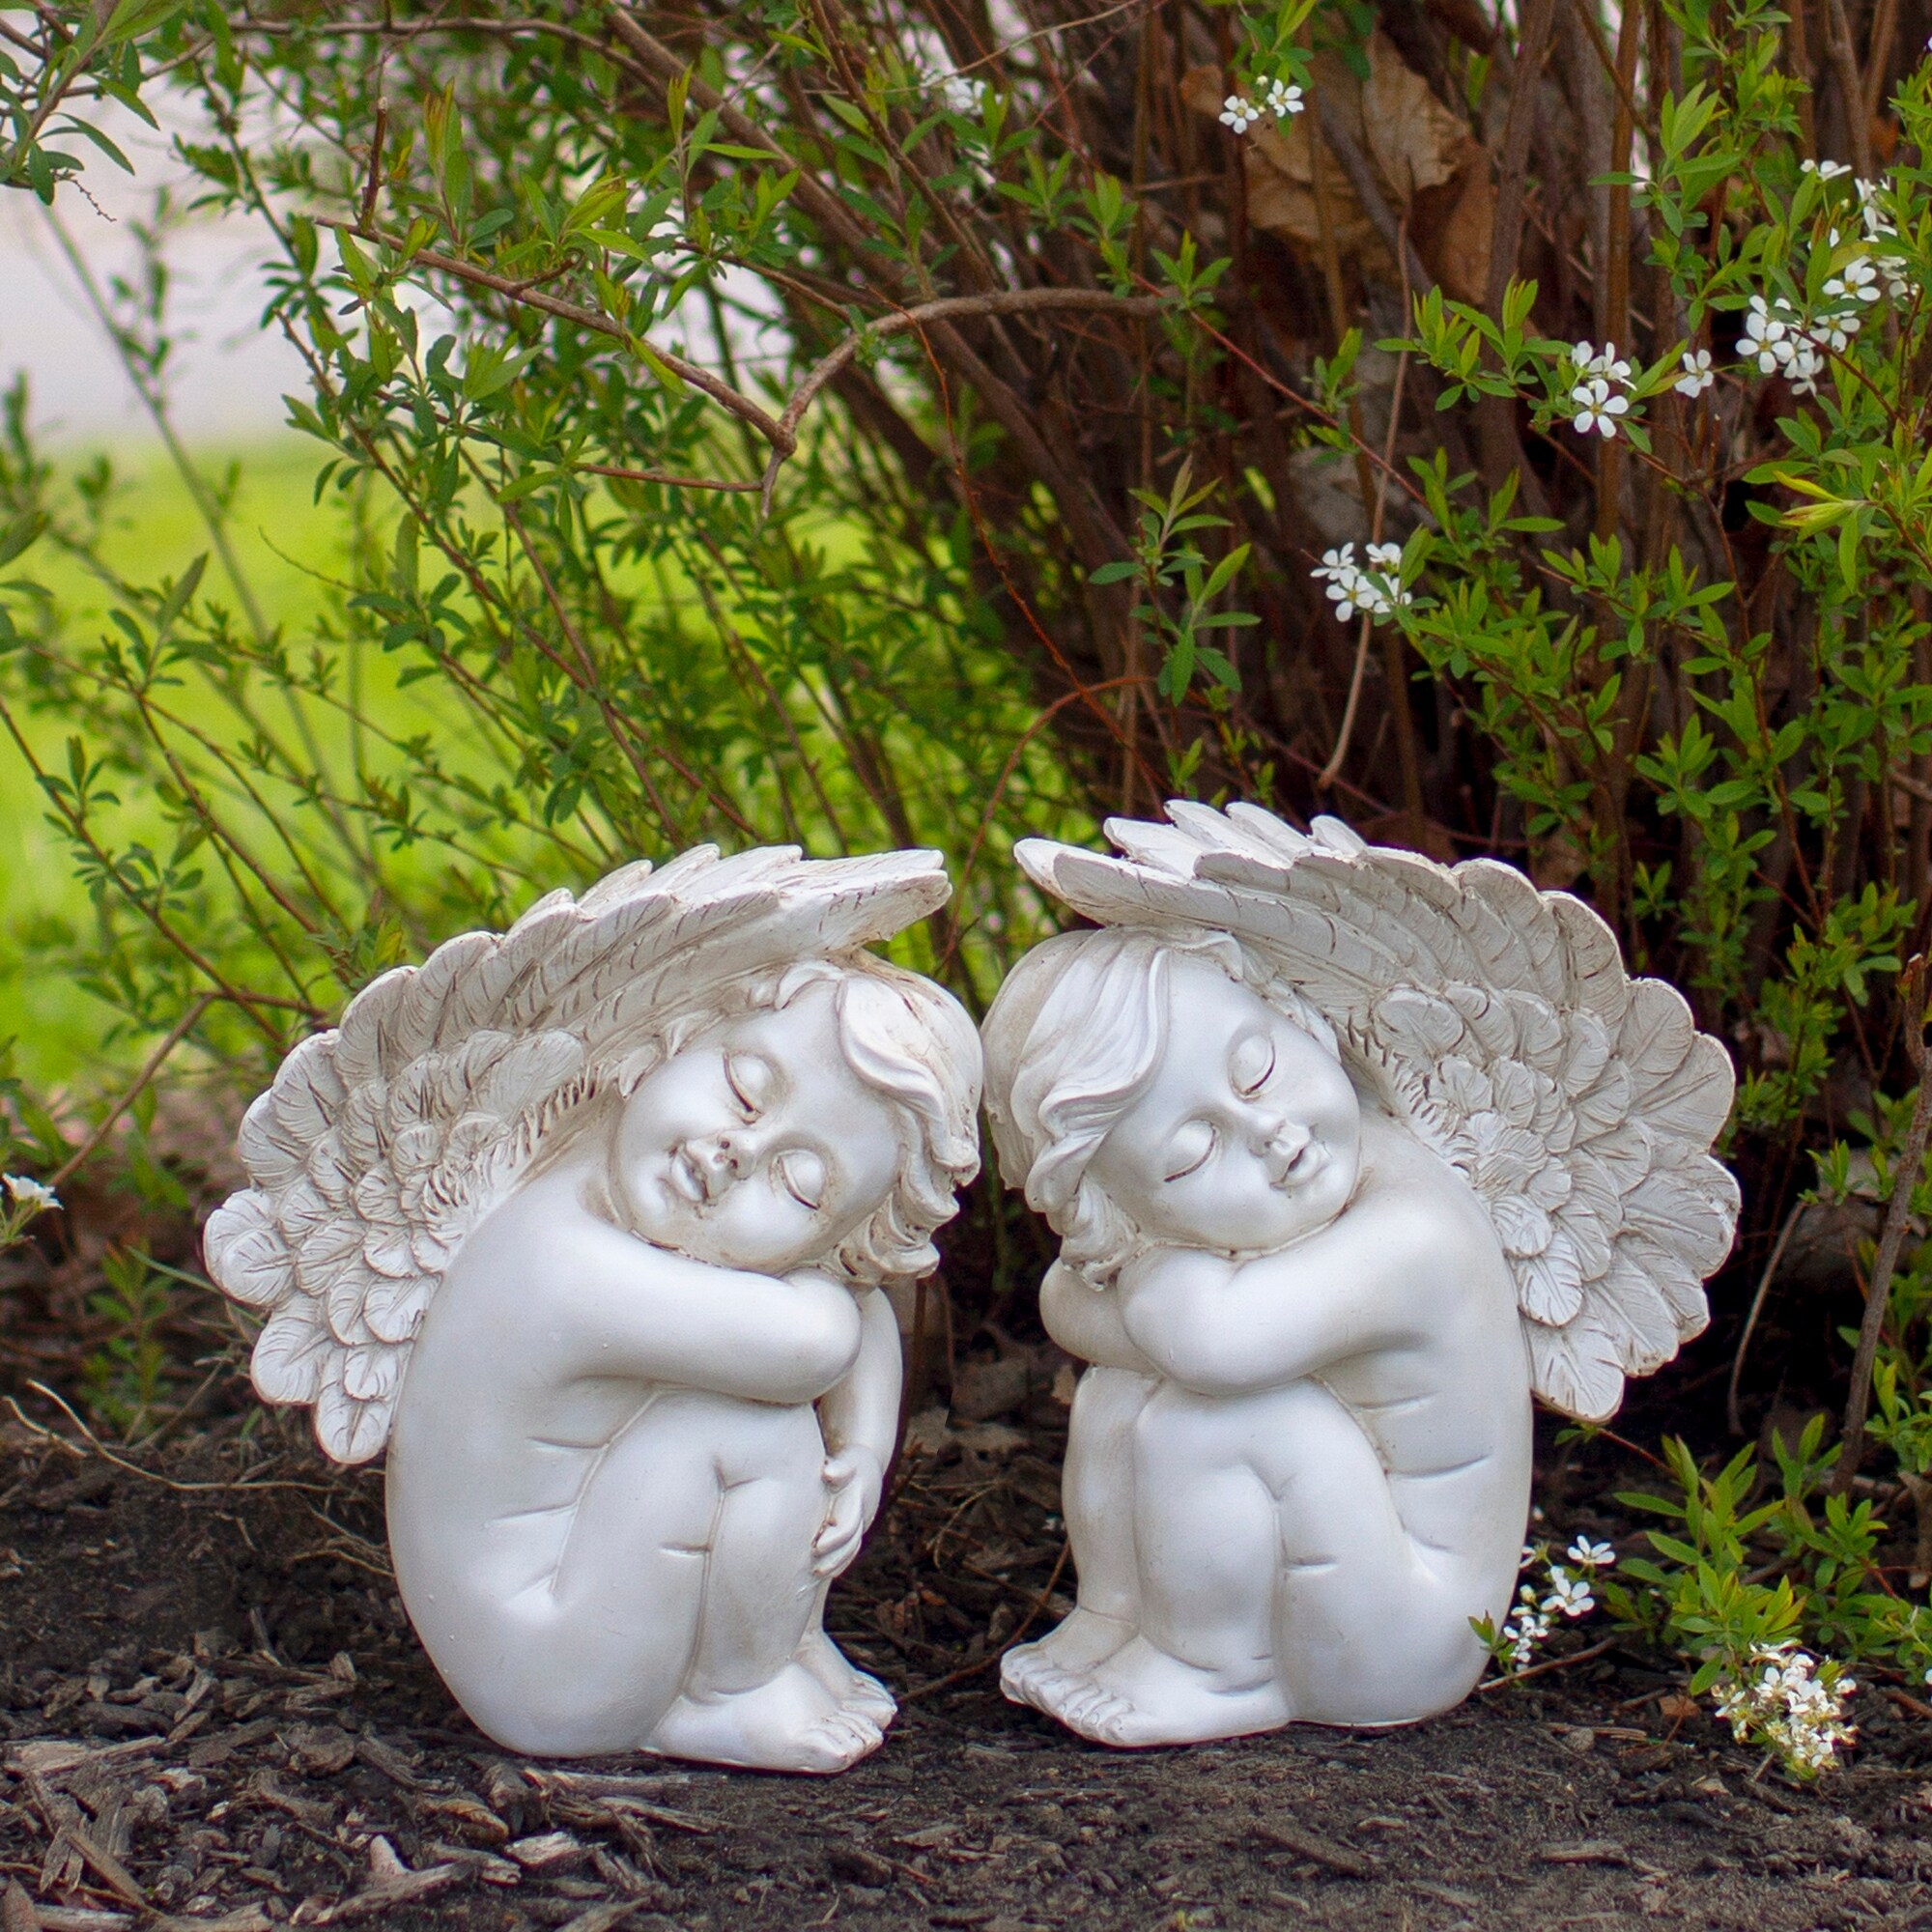 7.5" Ivory Left Facing Sleeping Cherub Angel Outdoor Garden Statue - image 2 of 5